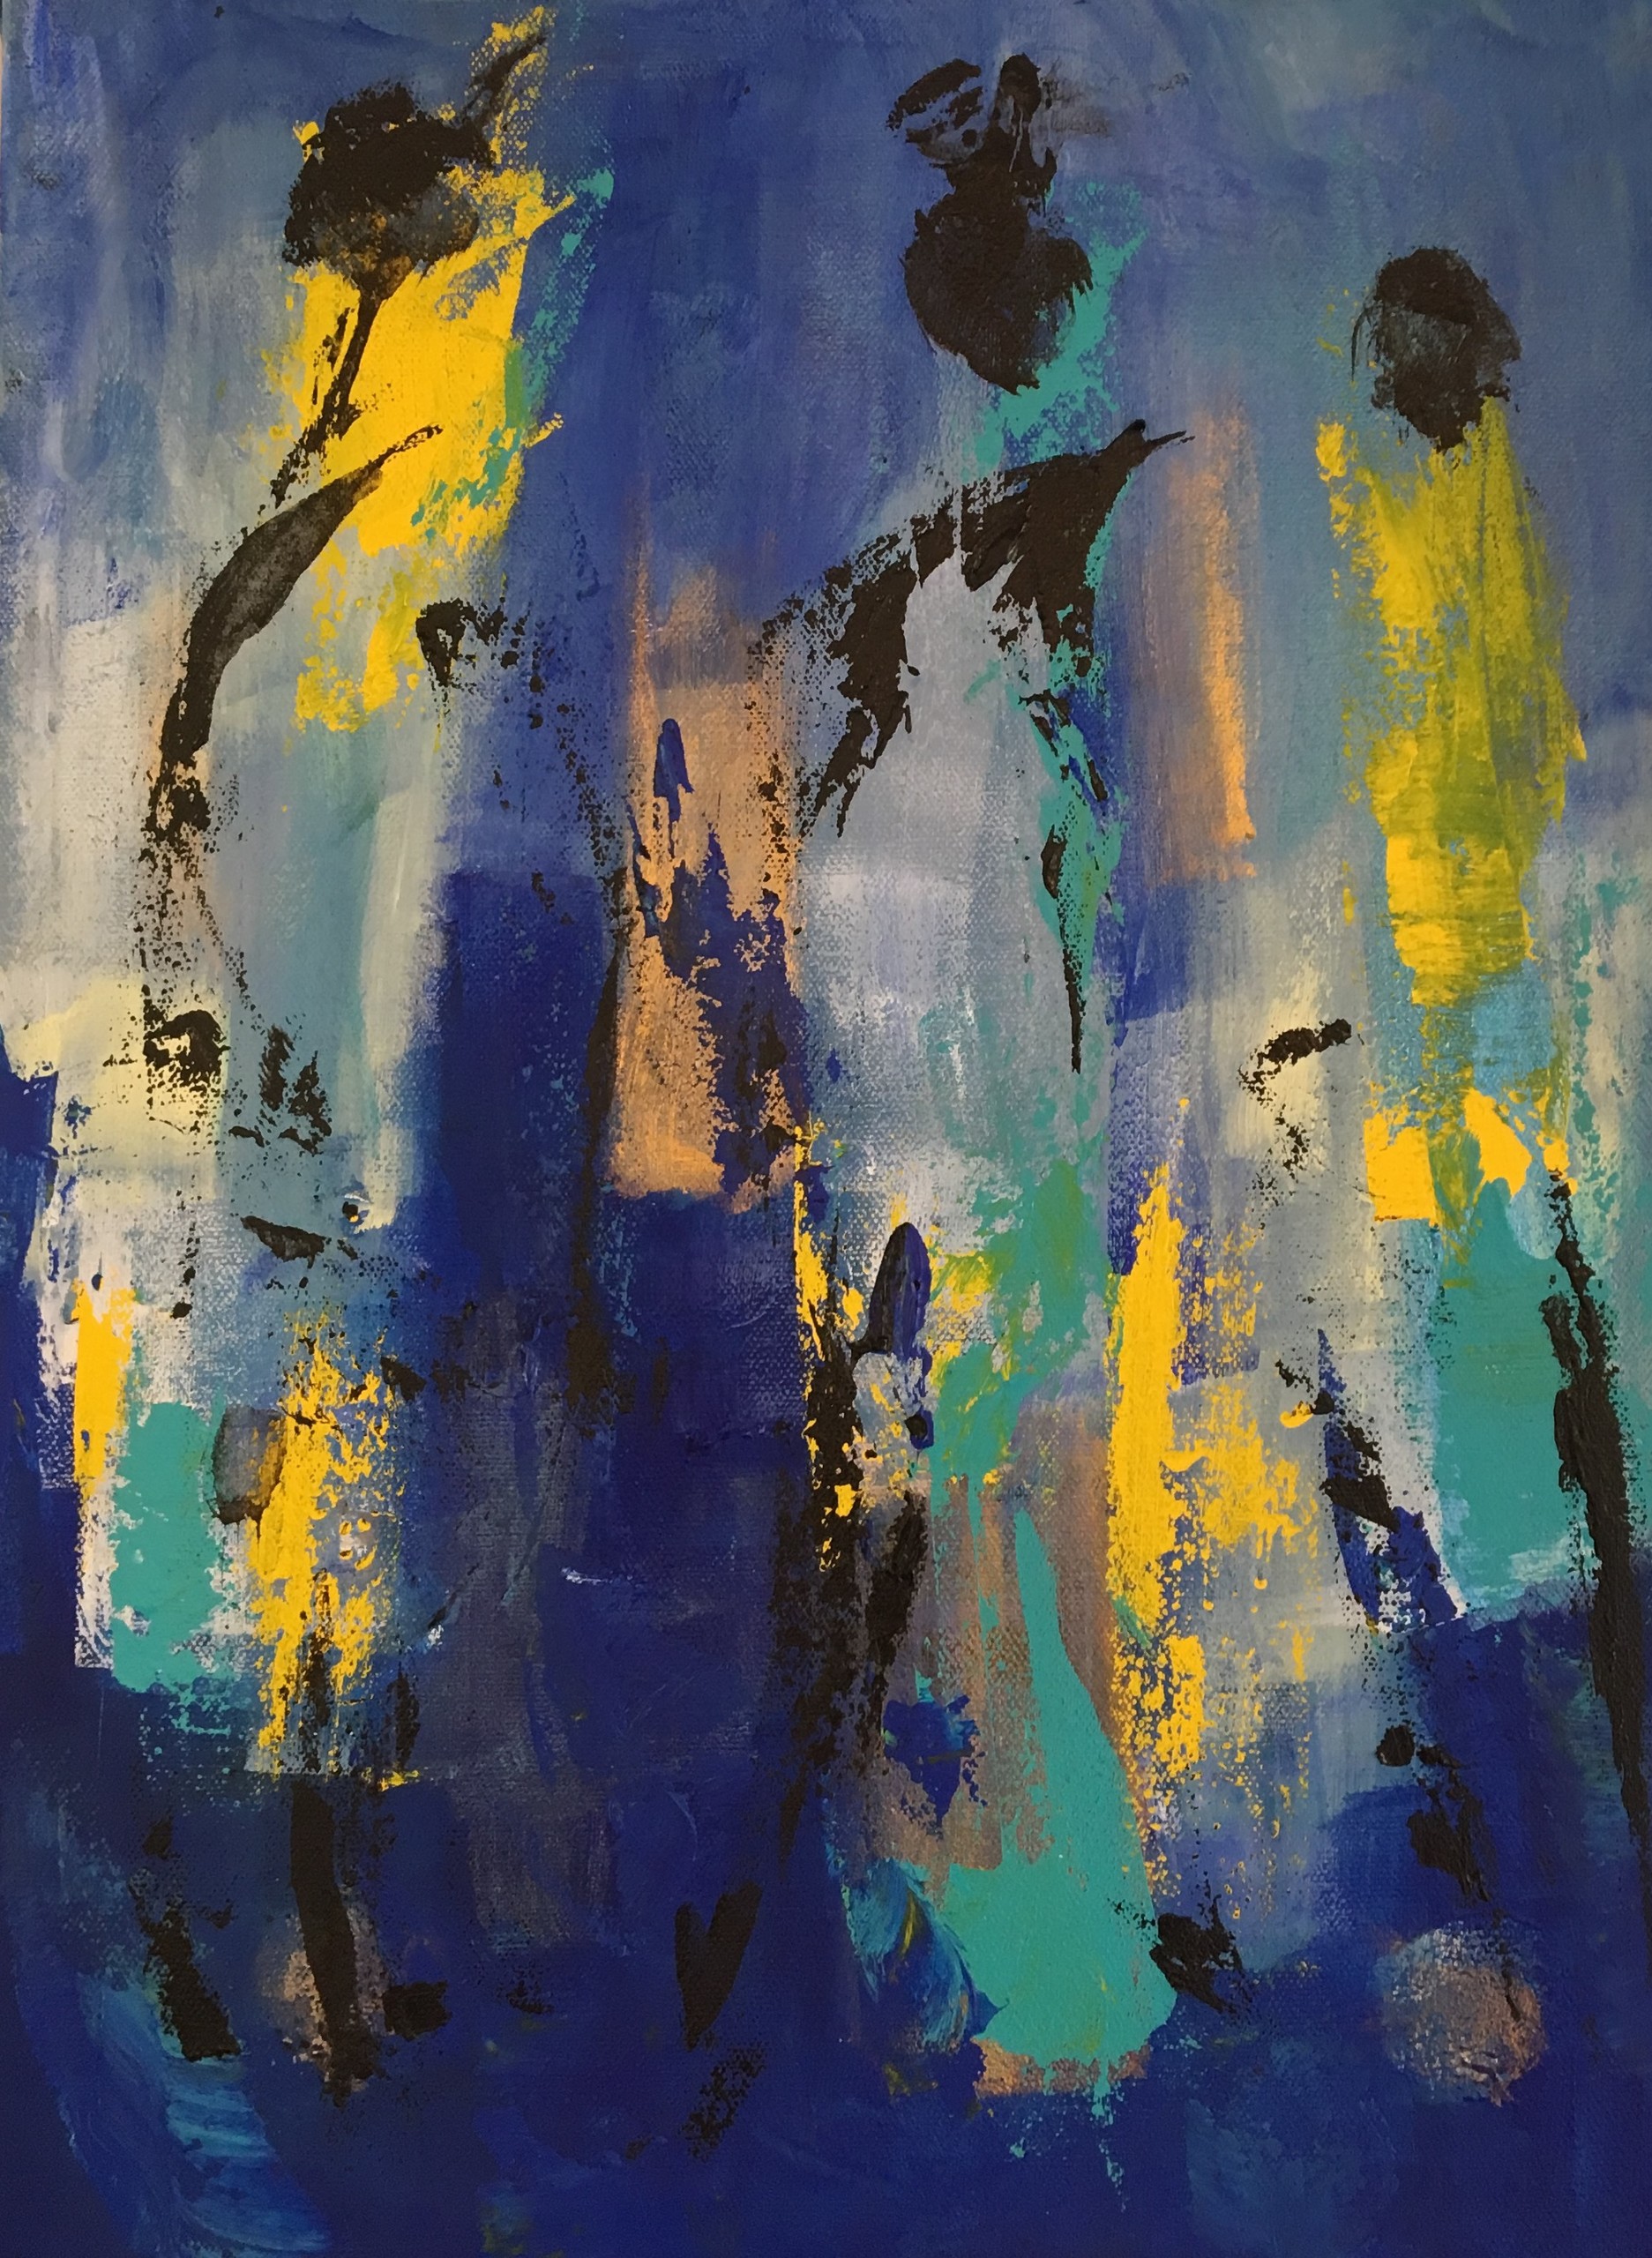 Lille blåt tone-i-tone maleri, hvor man i abstraktionen sre tre afrikanske kvinder.